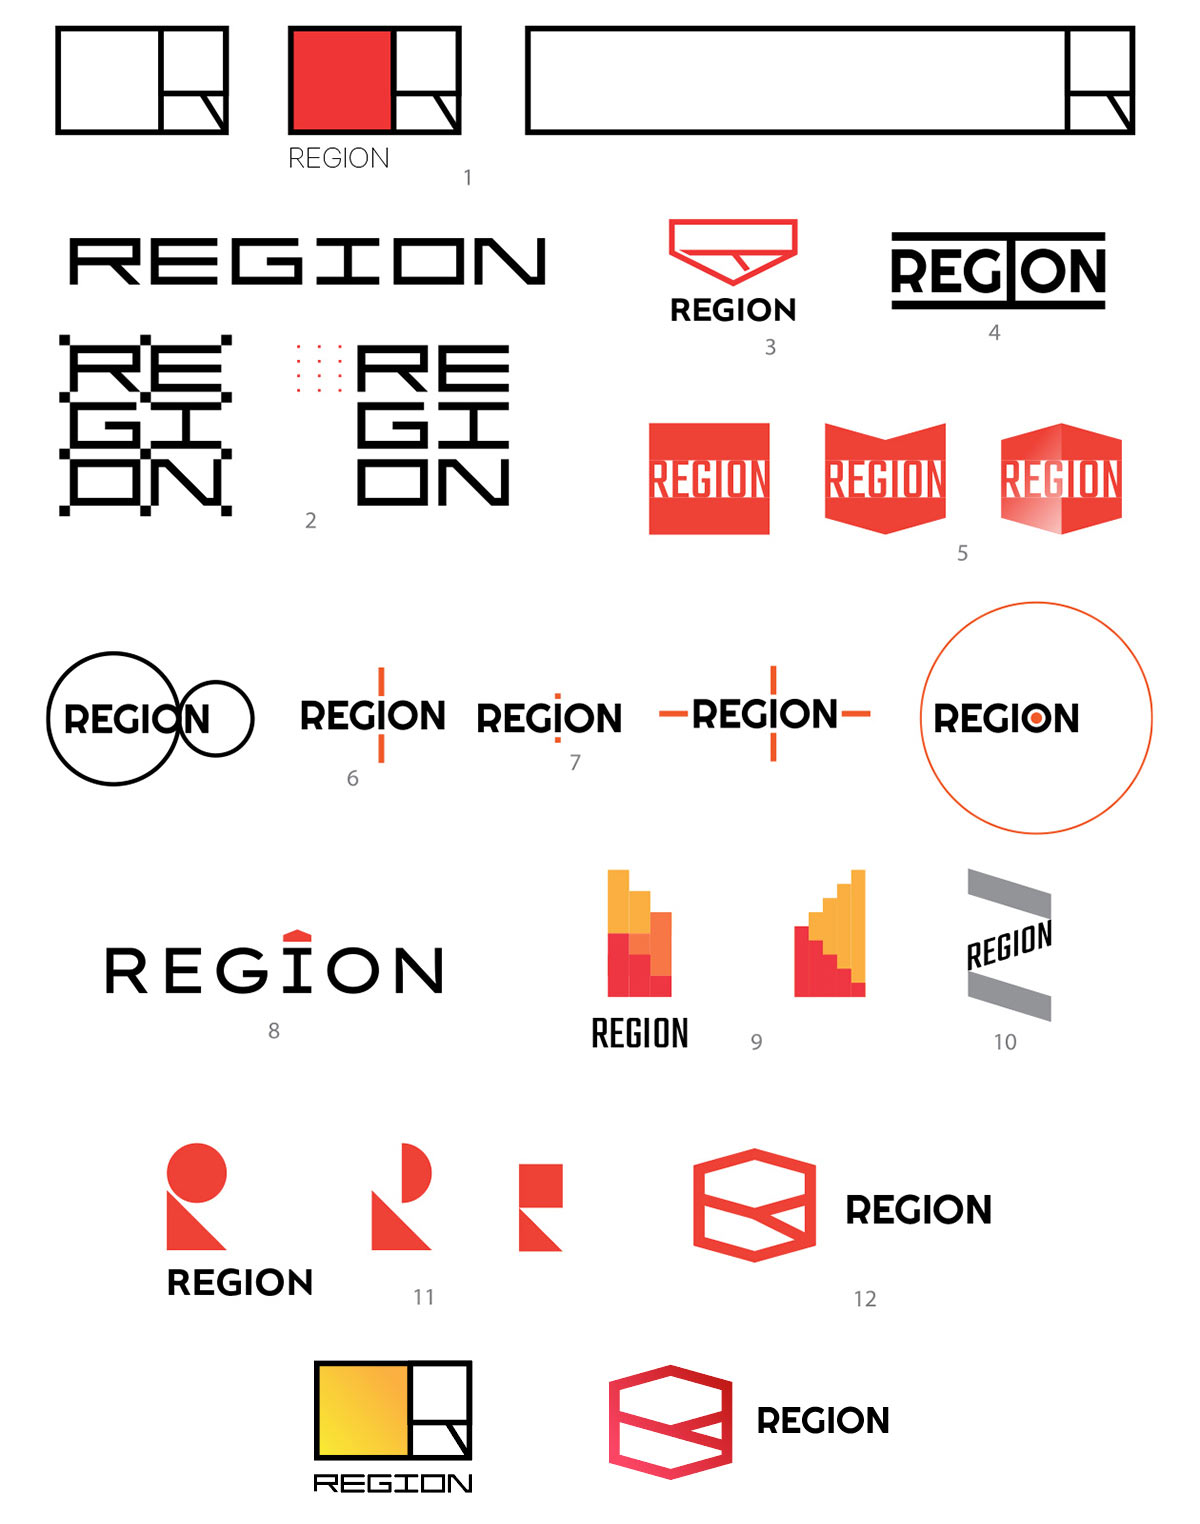 Region company. Создание логотипа. Правила построения логотипа. Регион логотип. Построение логотипа детализация.